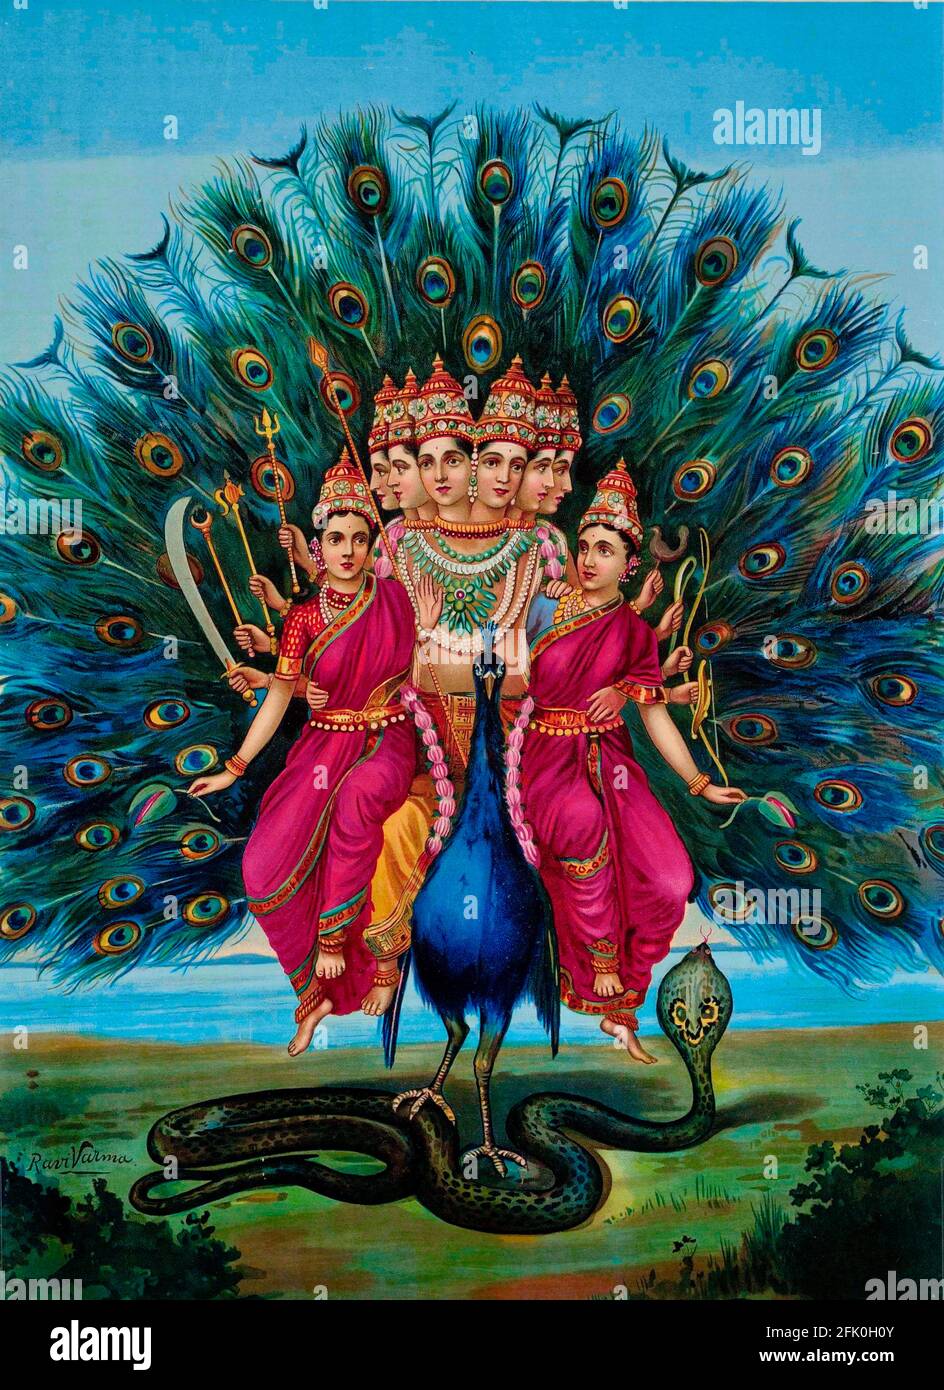 La deidad hindú Karttikeya o Murugan con sus consortes en su pavo real Vahana. Obra de Raja Ravi Varma Foto de stock